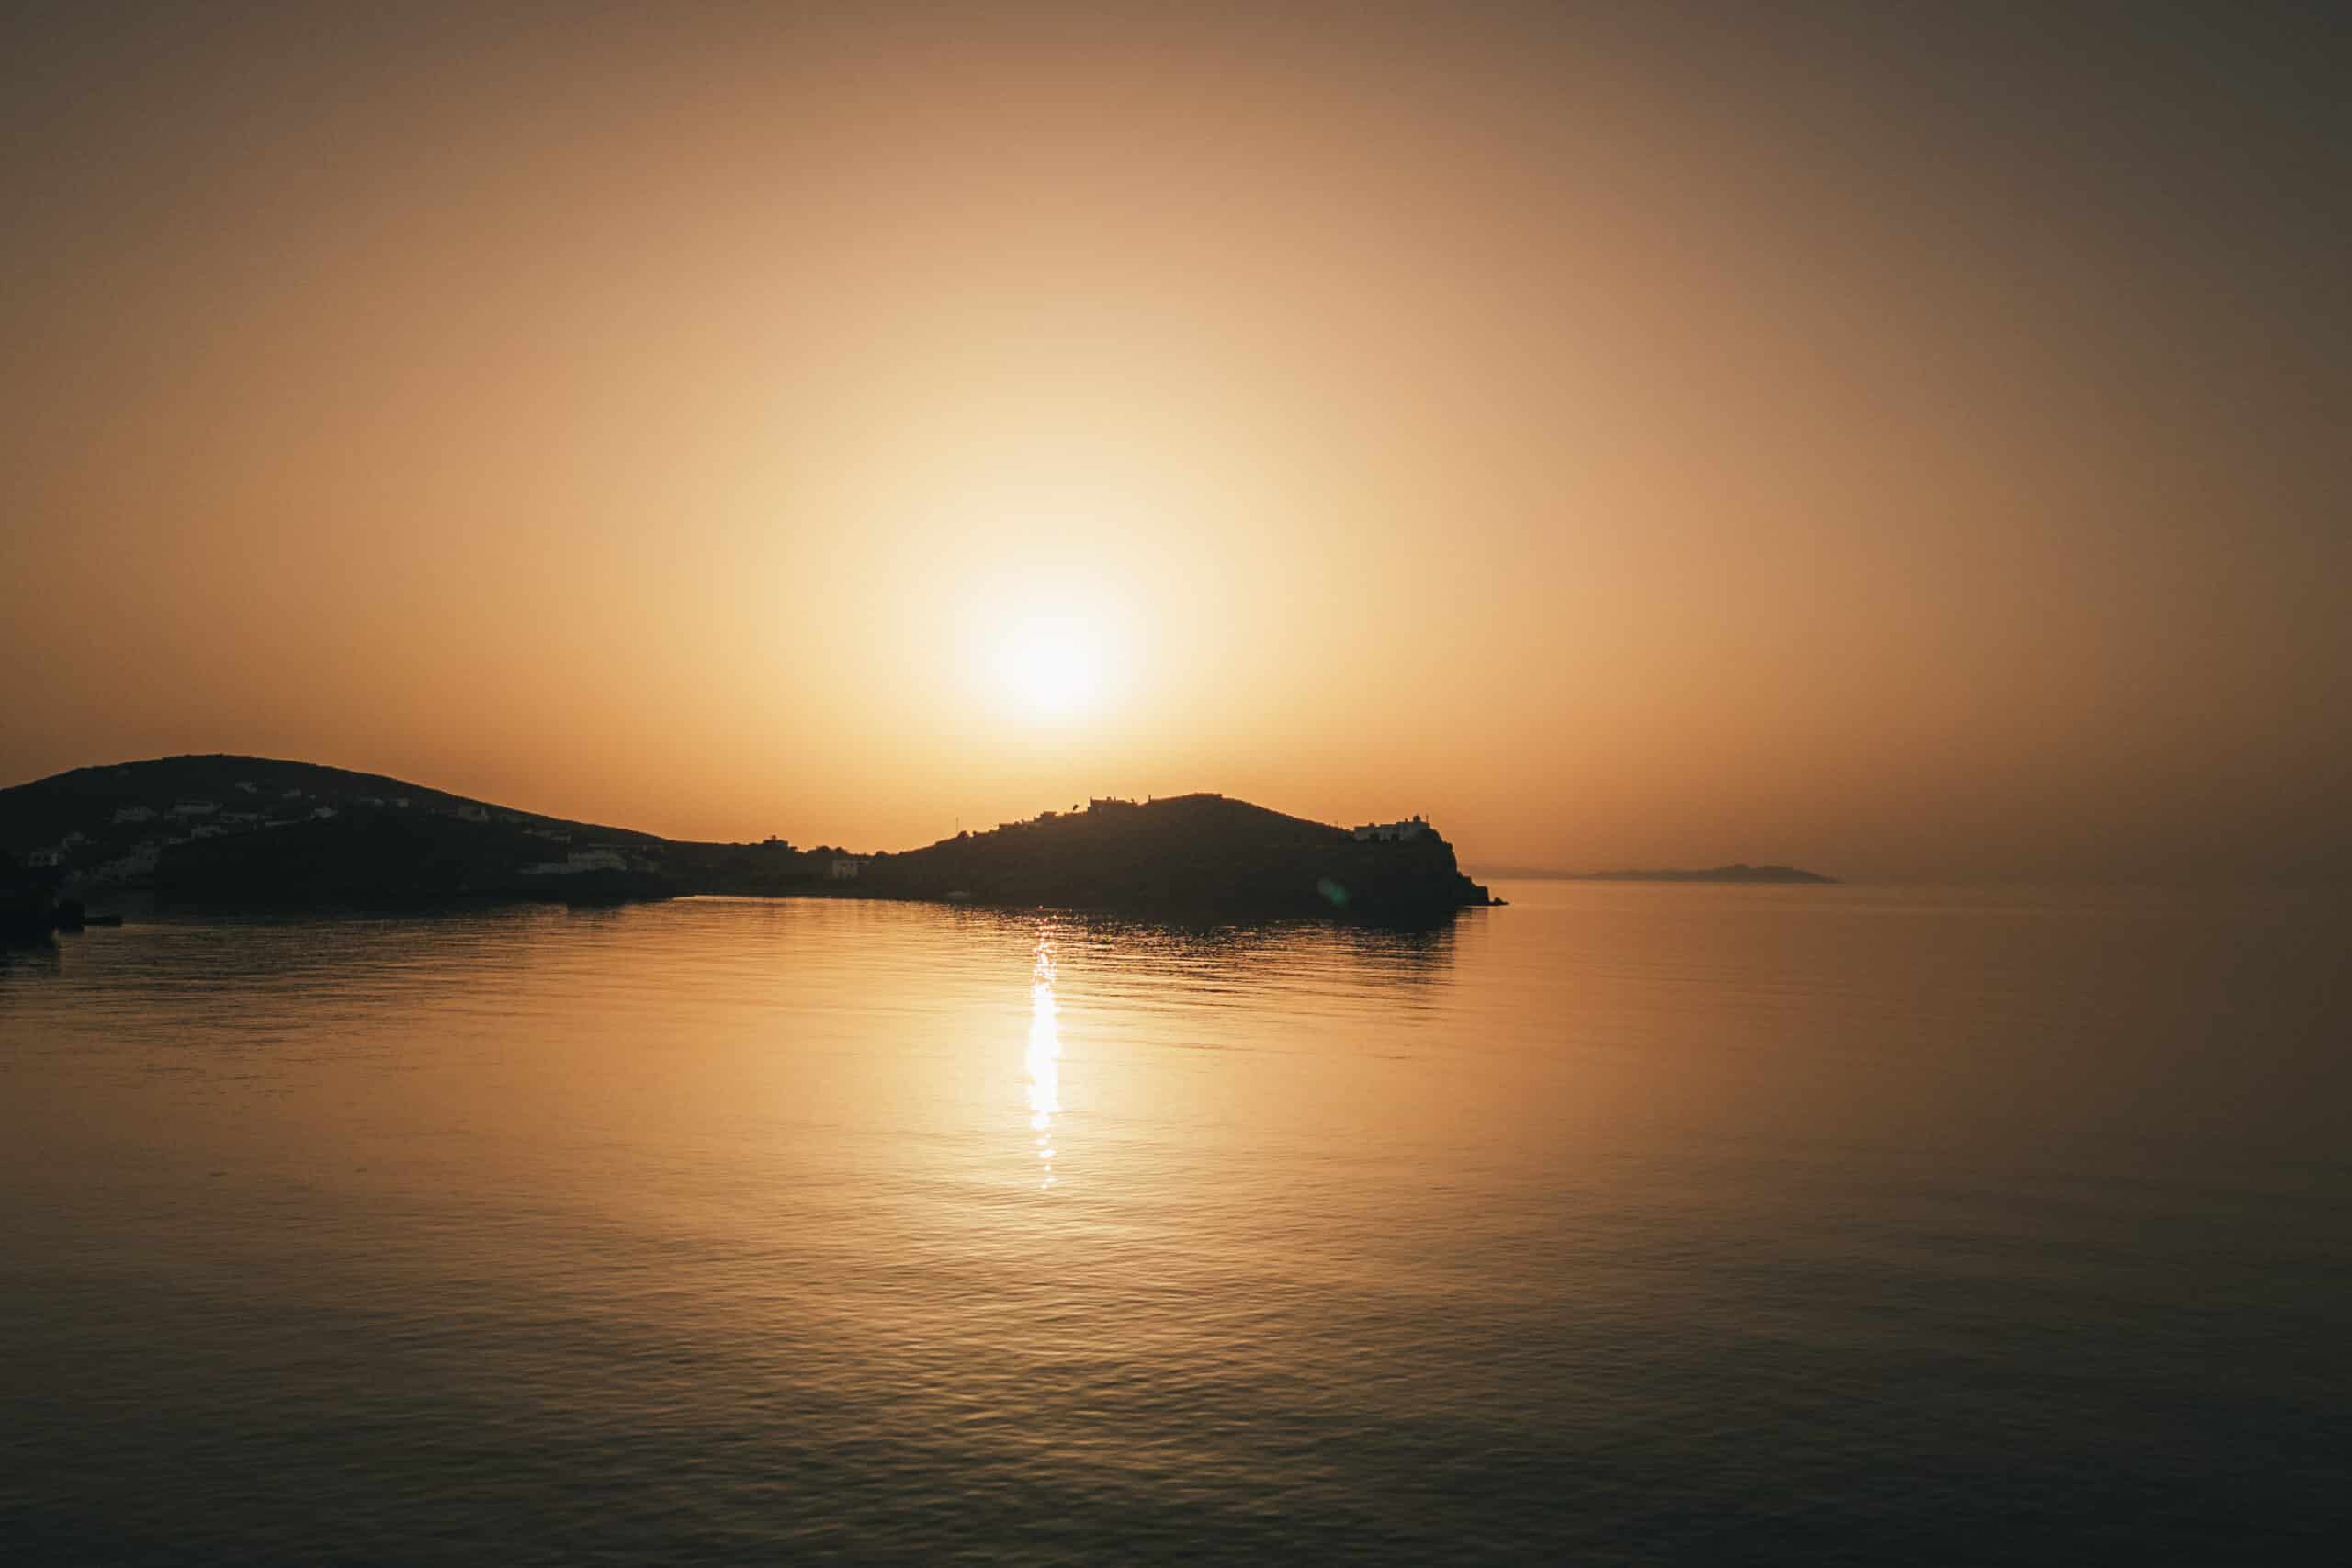 Ein ruhiger Sonnenuntergang über einem ruhigen Gewässer mit klarem Himmel, perfekt zum Segeln. Die Sonne, nahe dem Horizont, wirft ein warmes, goldenes Spiegelbild auf das Wasser. In der Ferne sind Hügelsilhouetten zu sehen. Die gesamte Szene ist friedlich und ruhig.